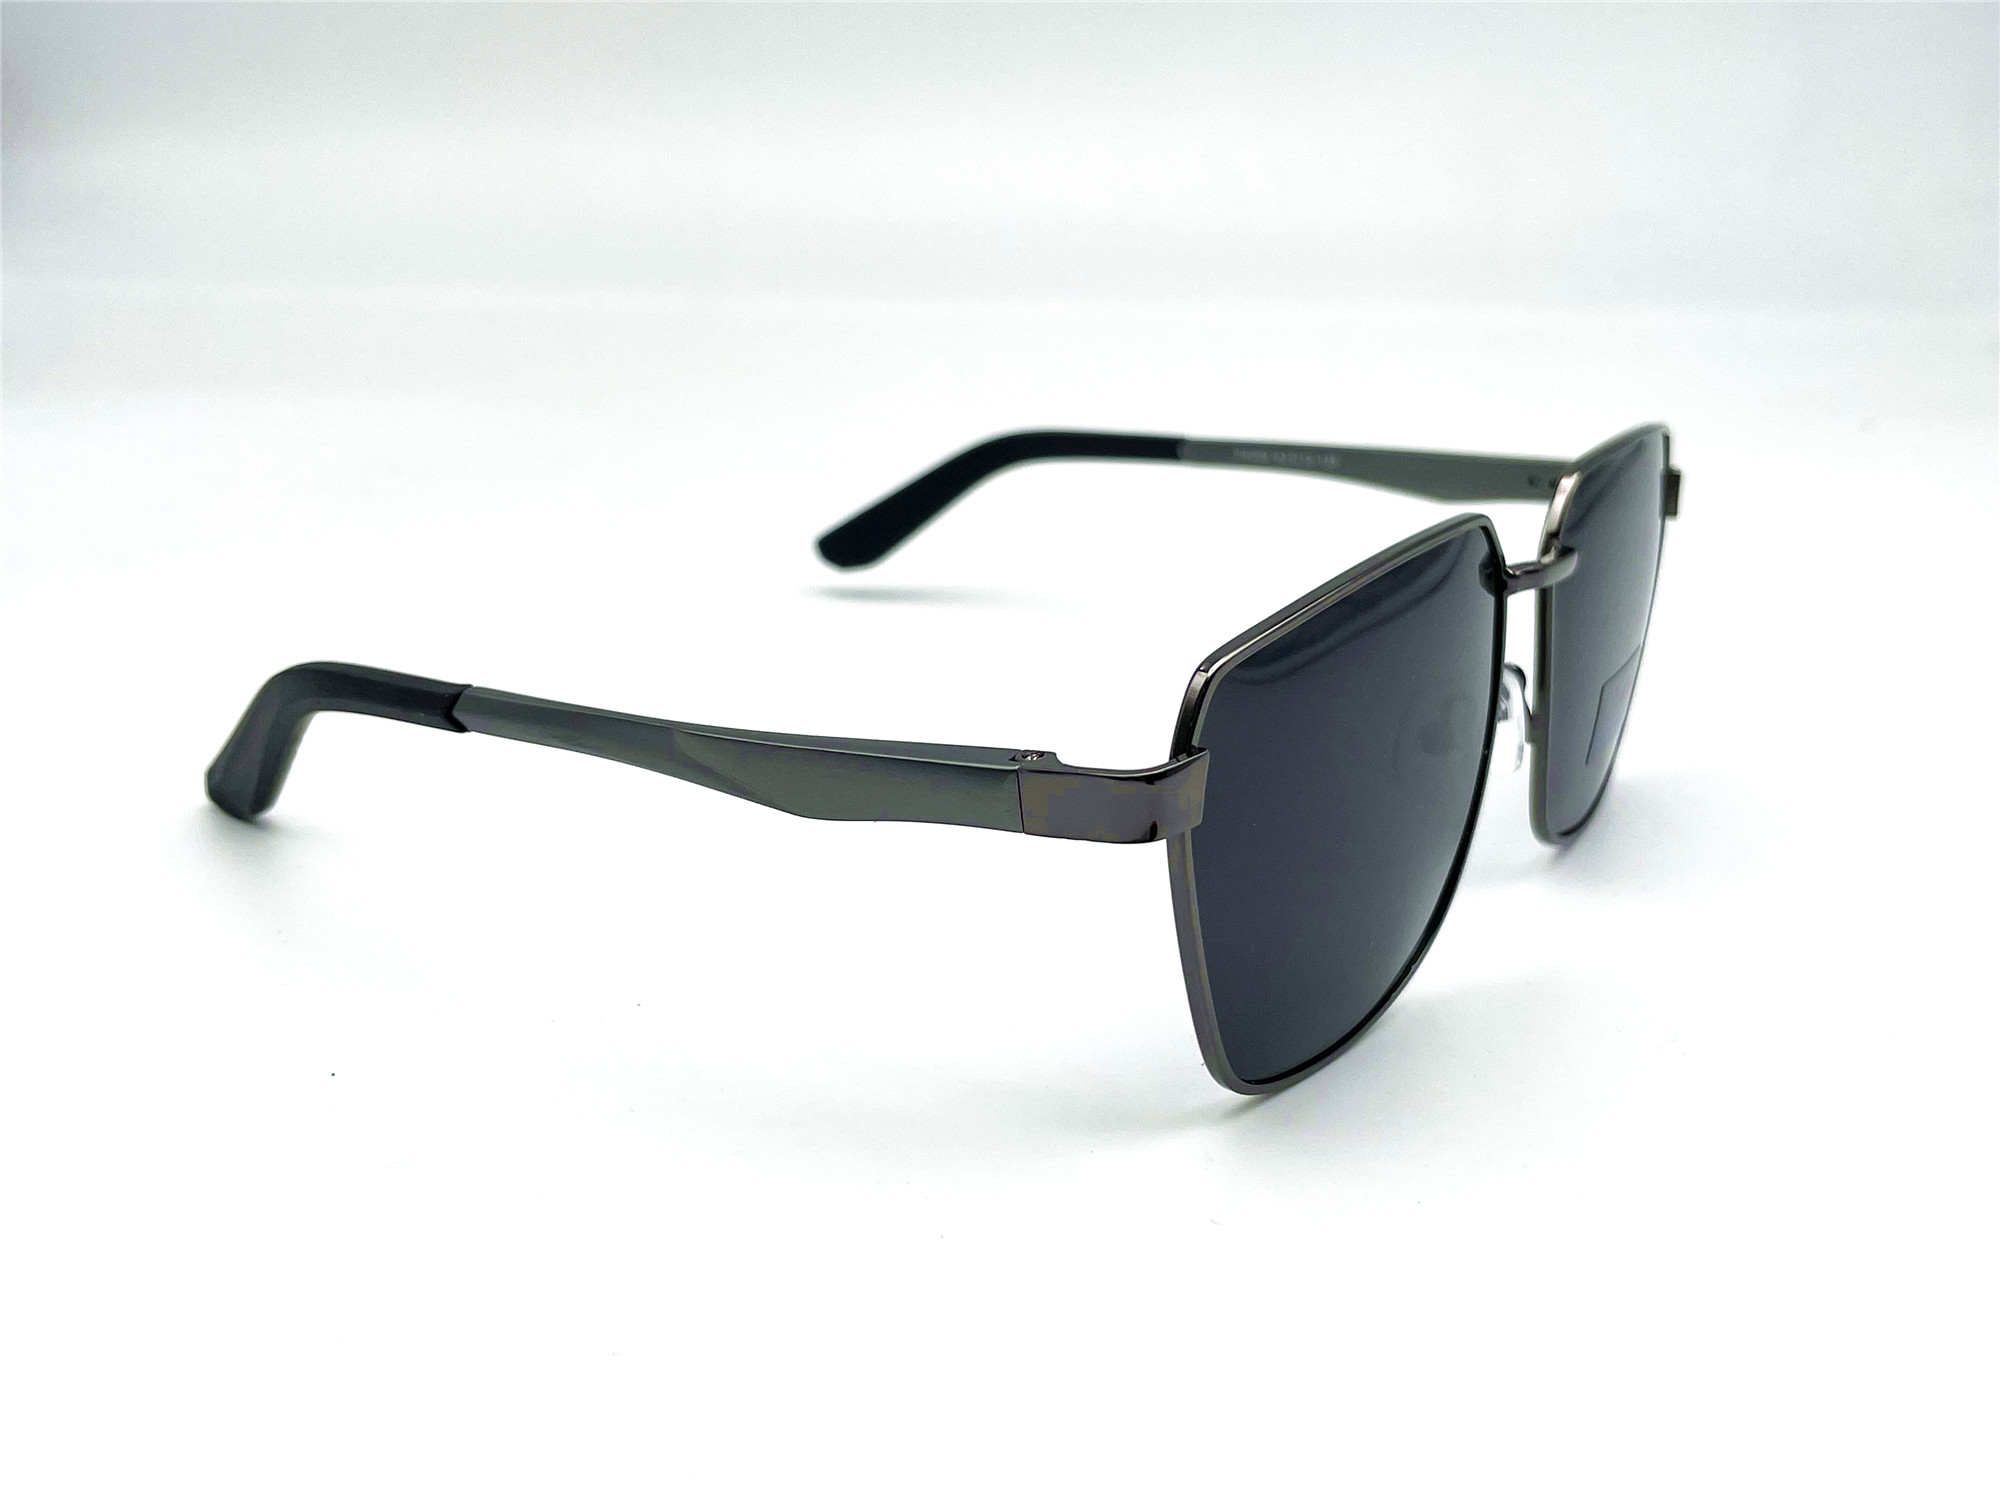  Солнцезащитные очки картинка Мужские Caipai Polarized Квадратные P4006-С2 